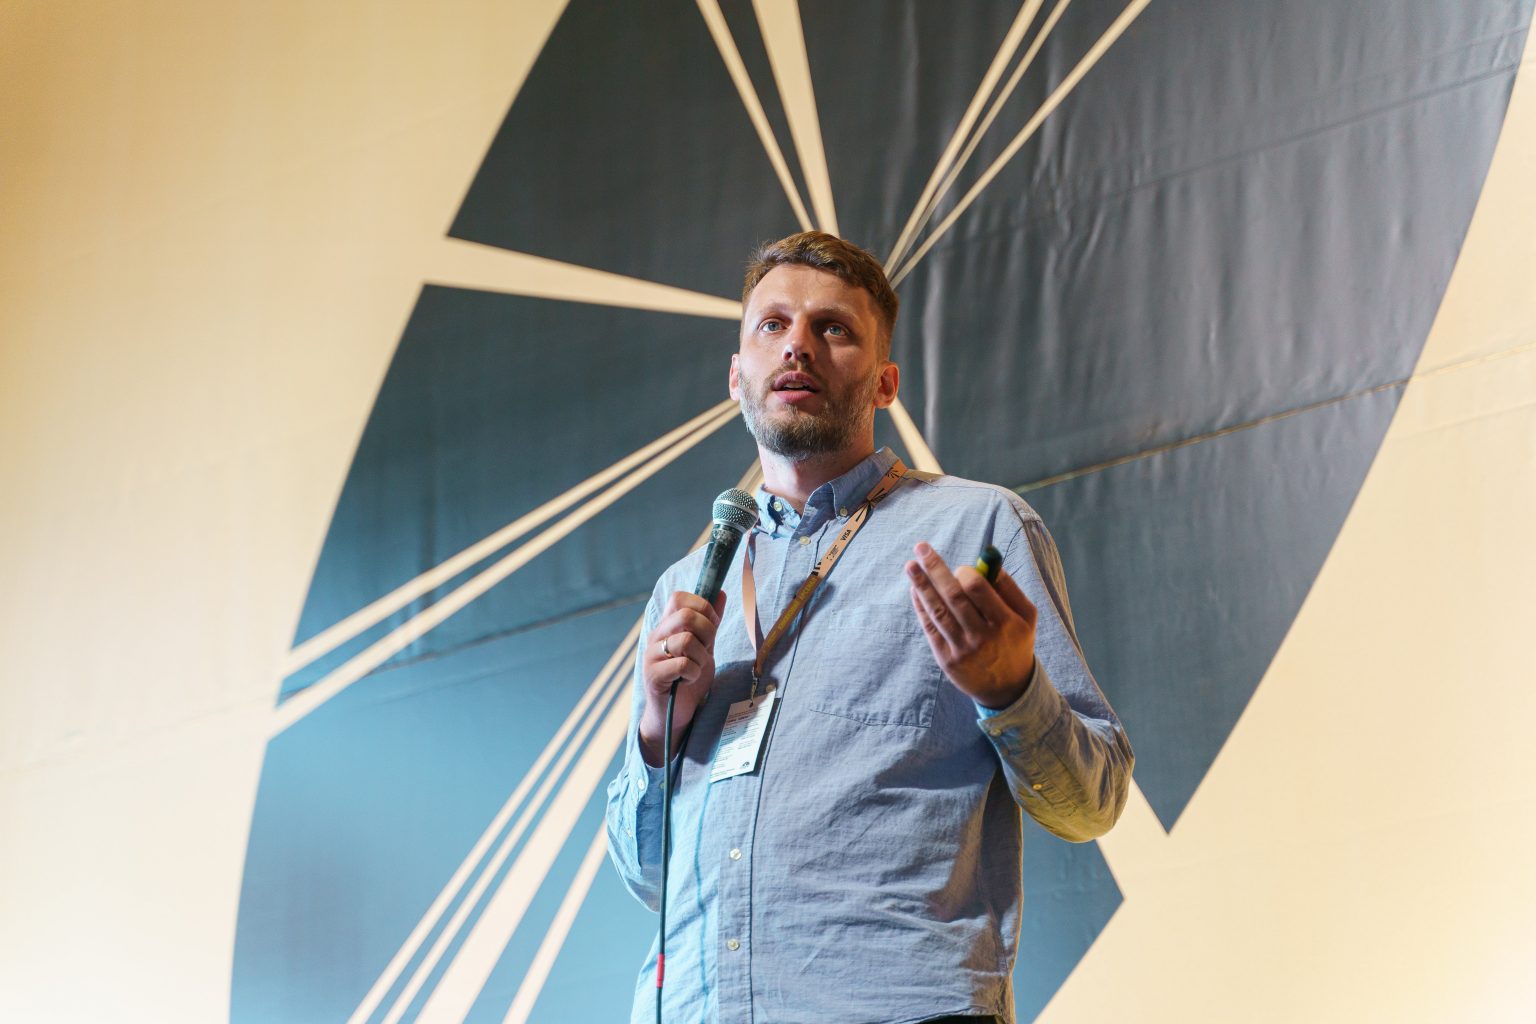 Менеджер компанії SiteGist, Маркіян Микитка, під час презентації «Ідеальний інтернет-магазин для видавництва/книгарні» в межах Книжкового Арсеналу.